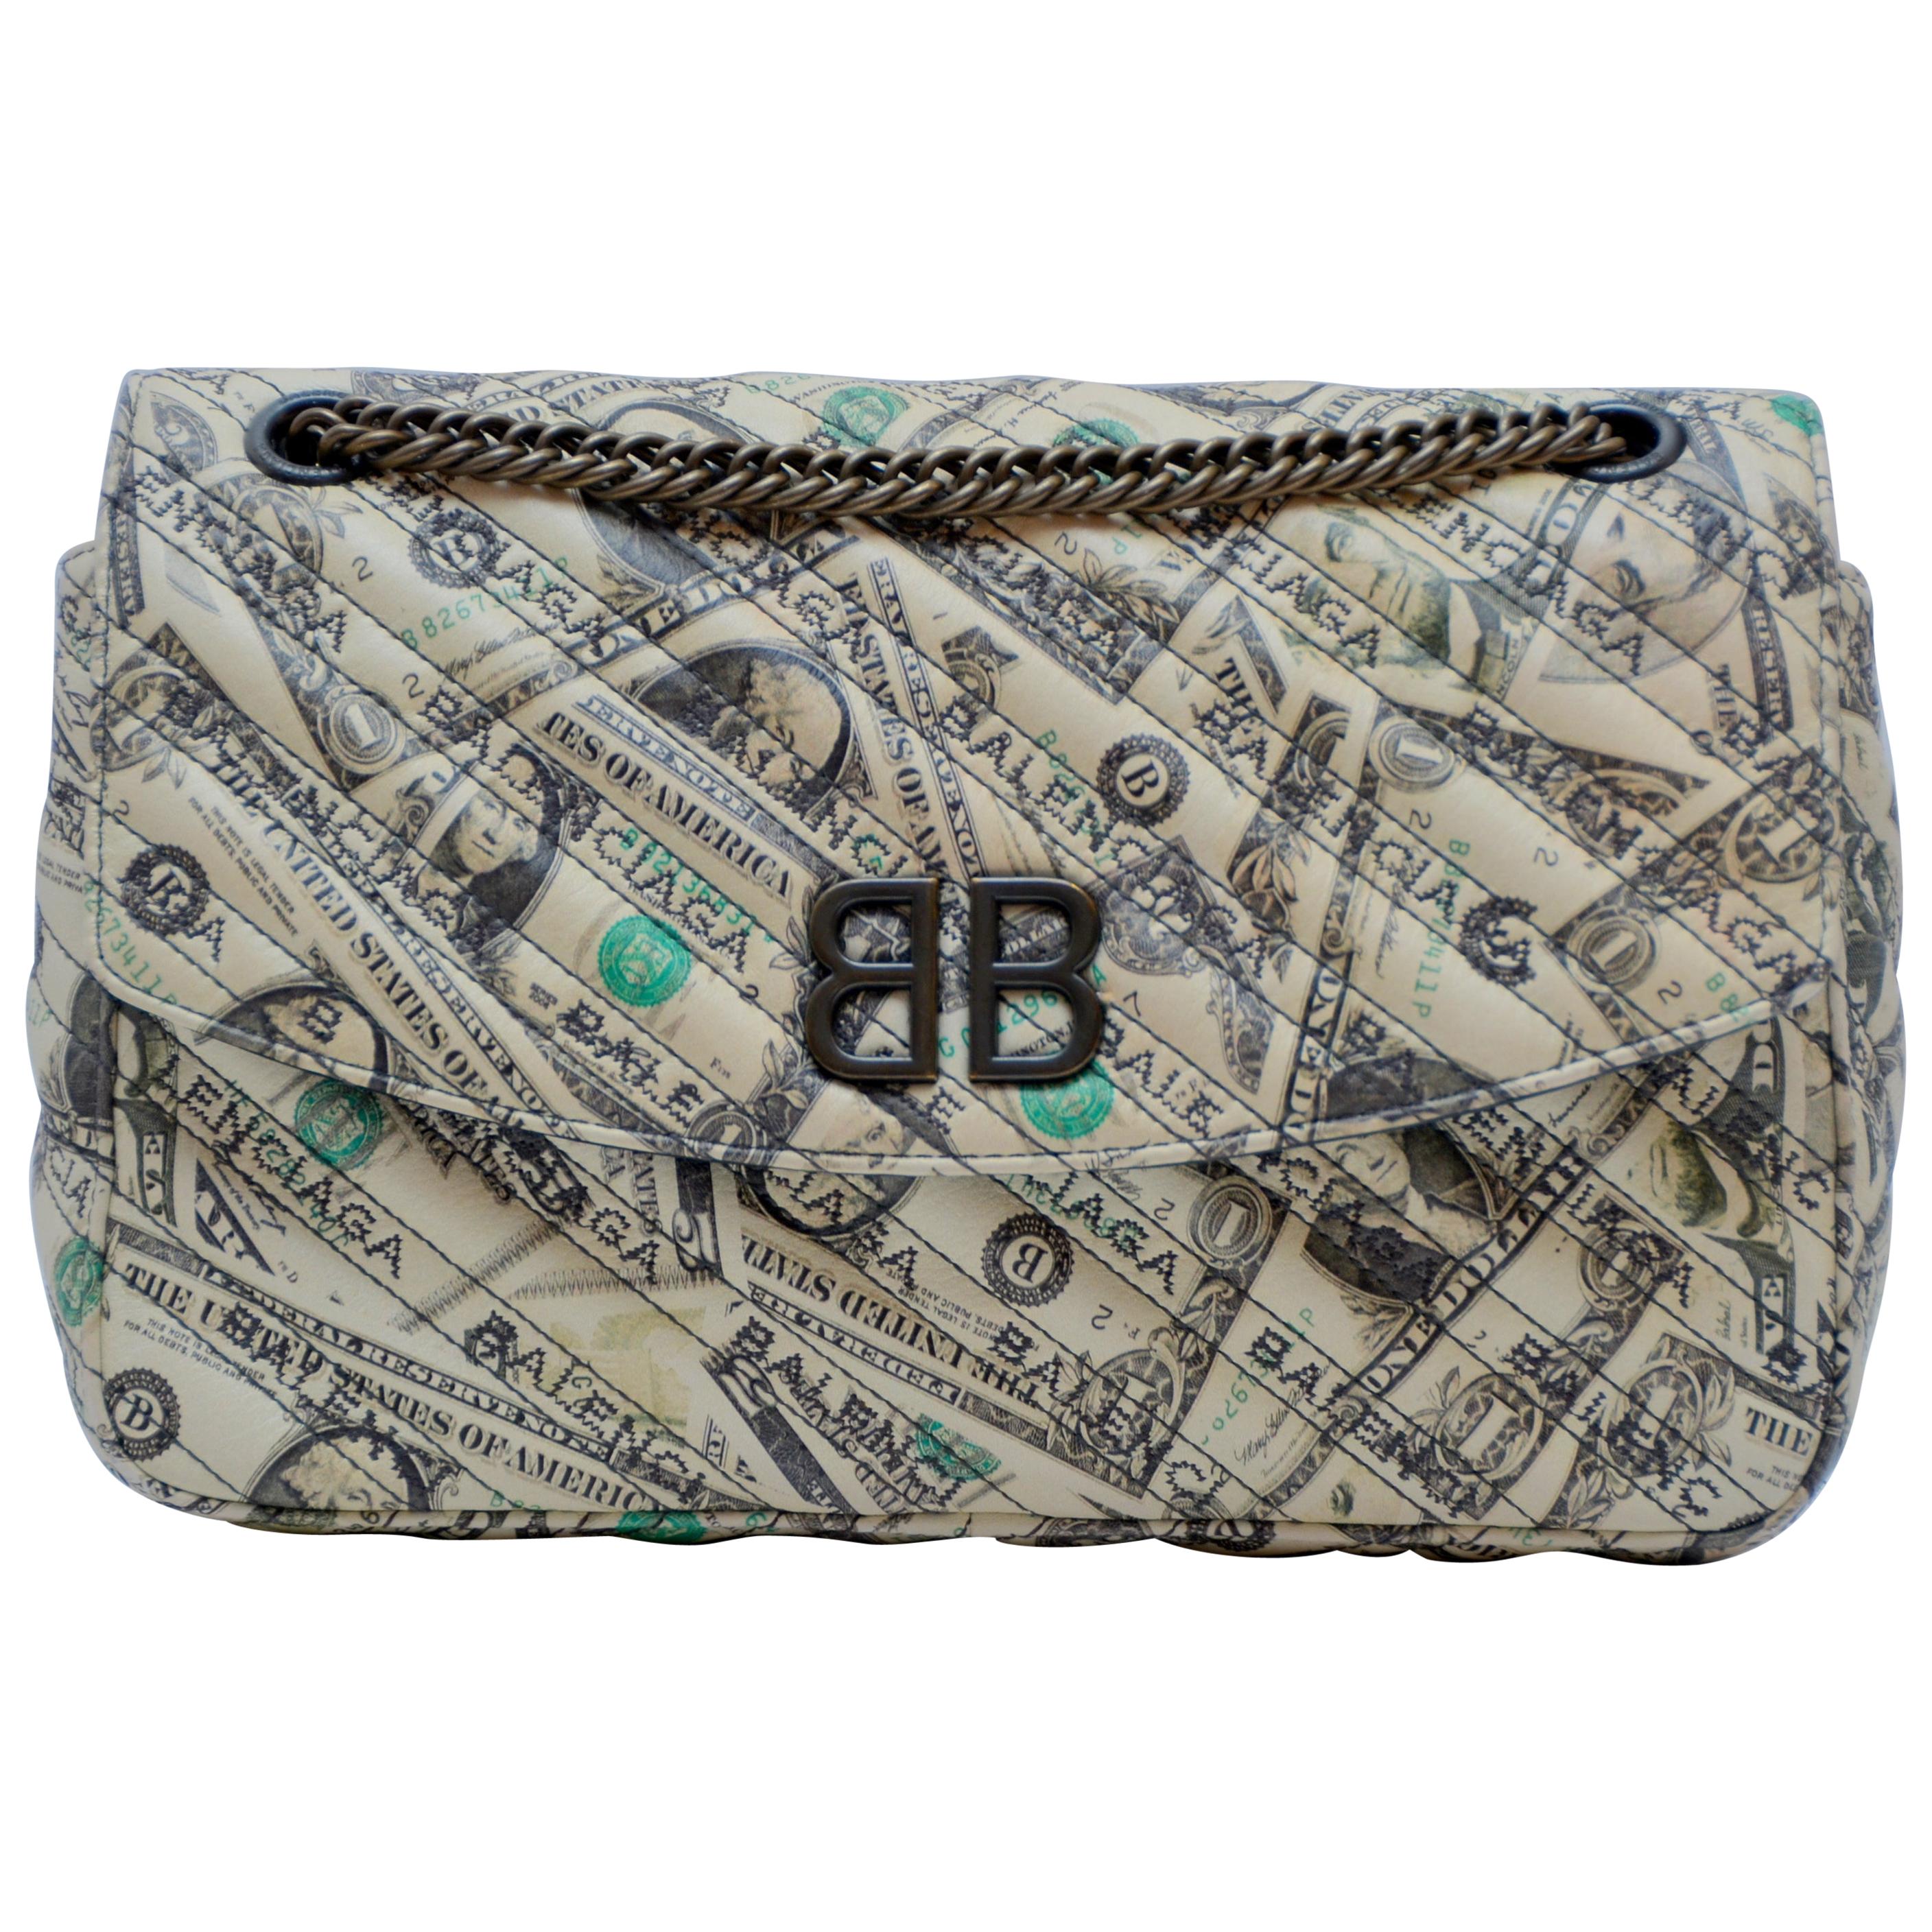 Balenciaga Bb Bag - 8 For Sale on 1stDibs